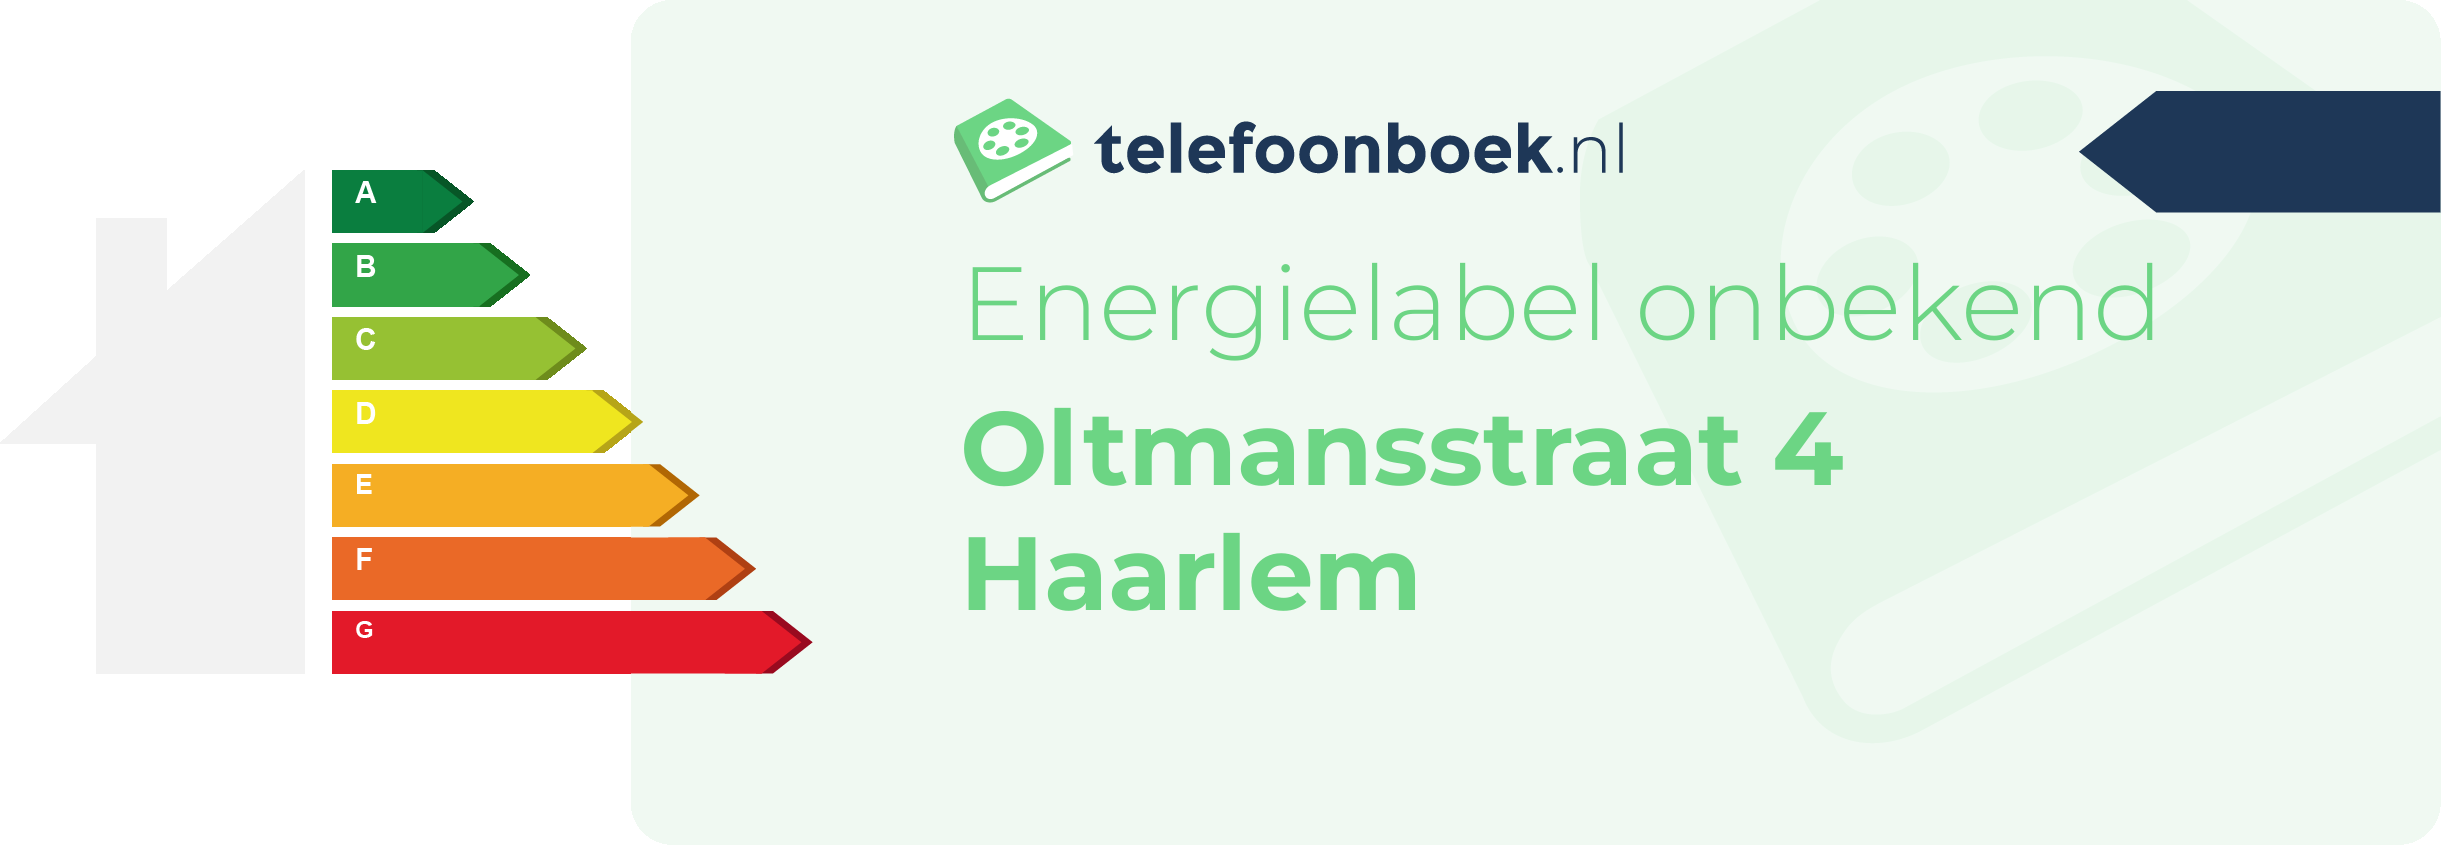 Energielabel Oltmansstraat 4 Haarlem